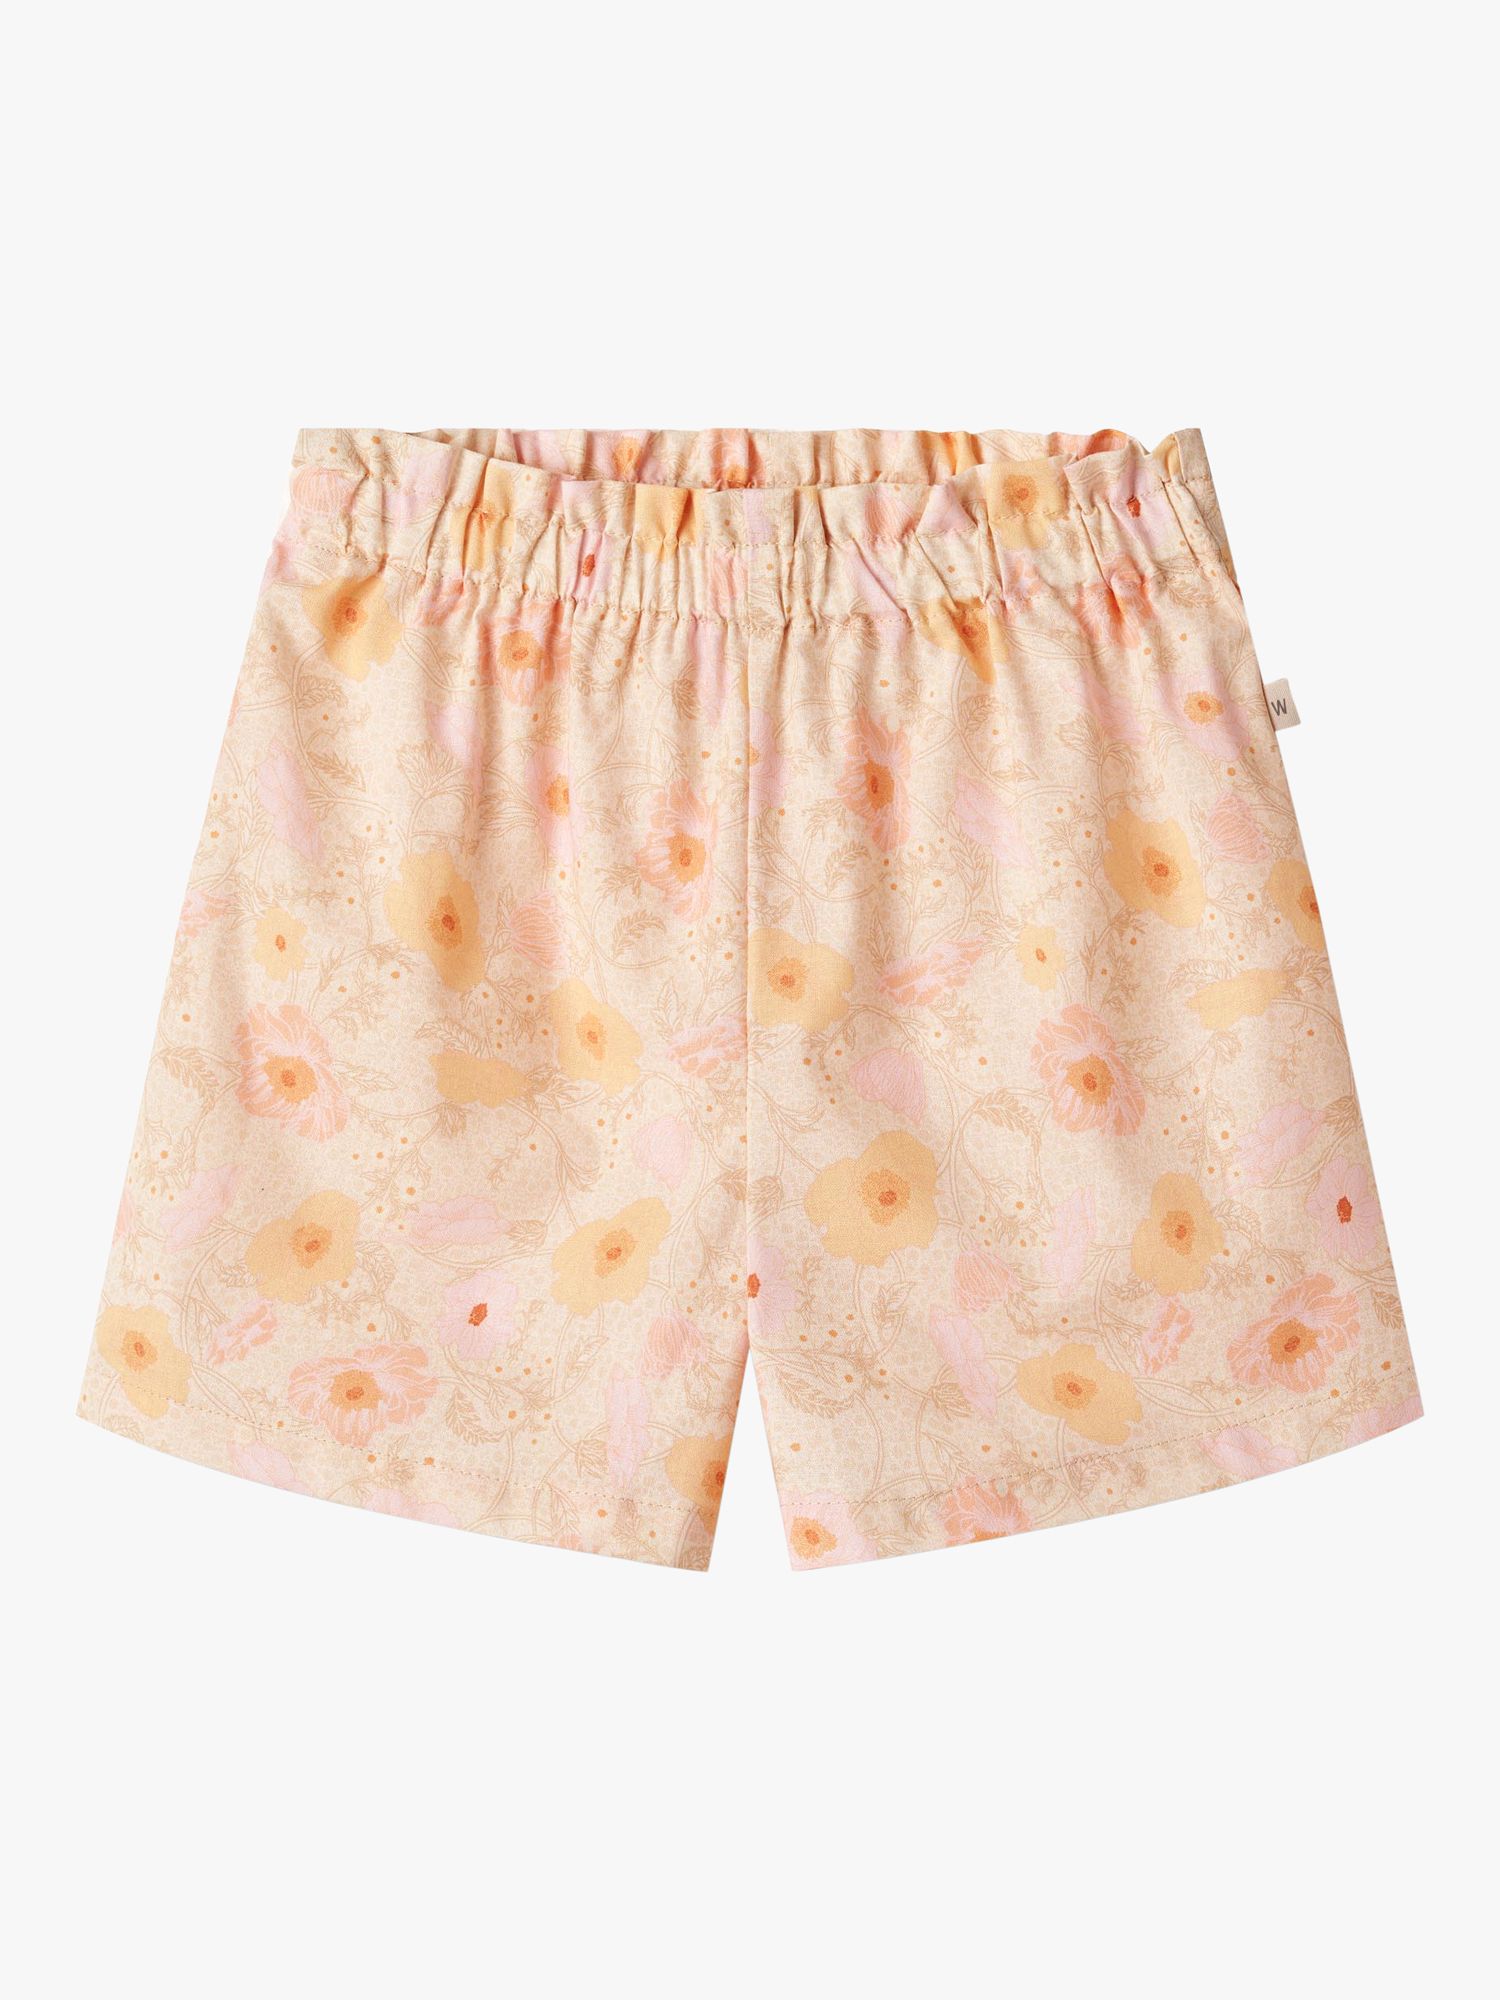 WHEAT Kids' Silja Organic Cotton Floral Print Shorts, Alabaster, 6 years